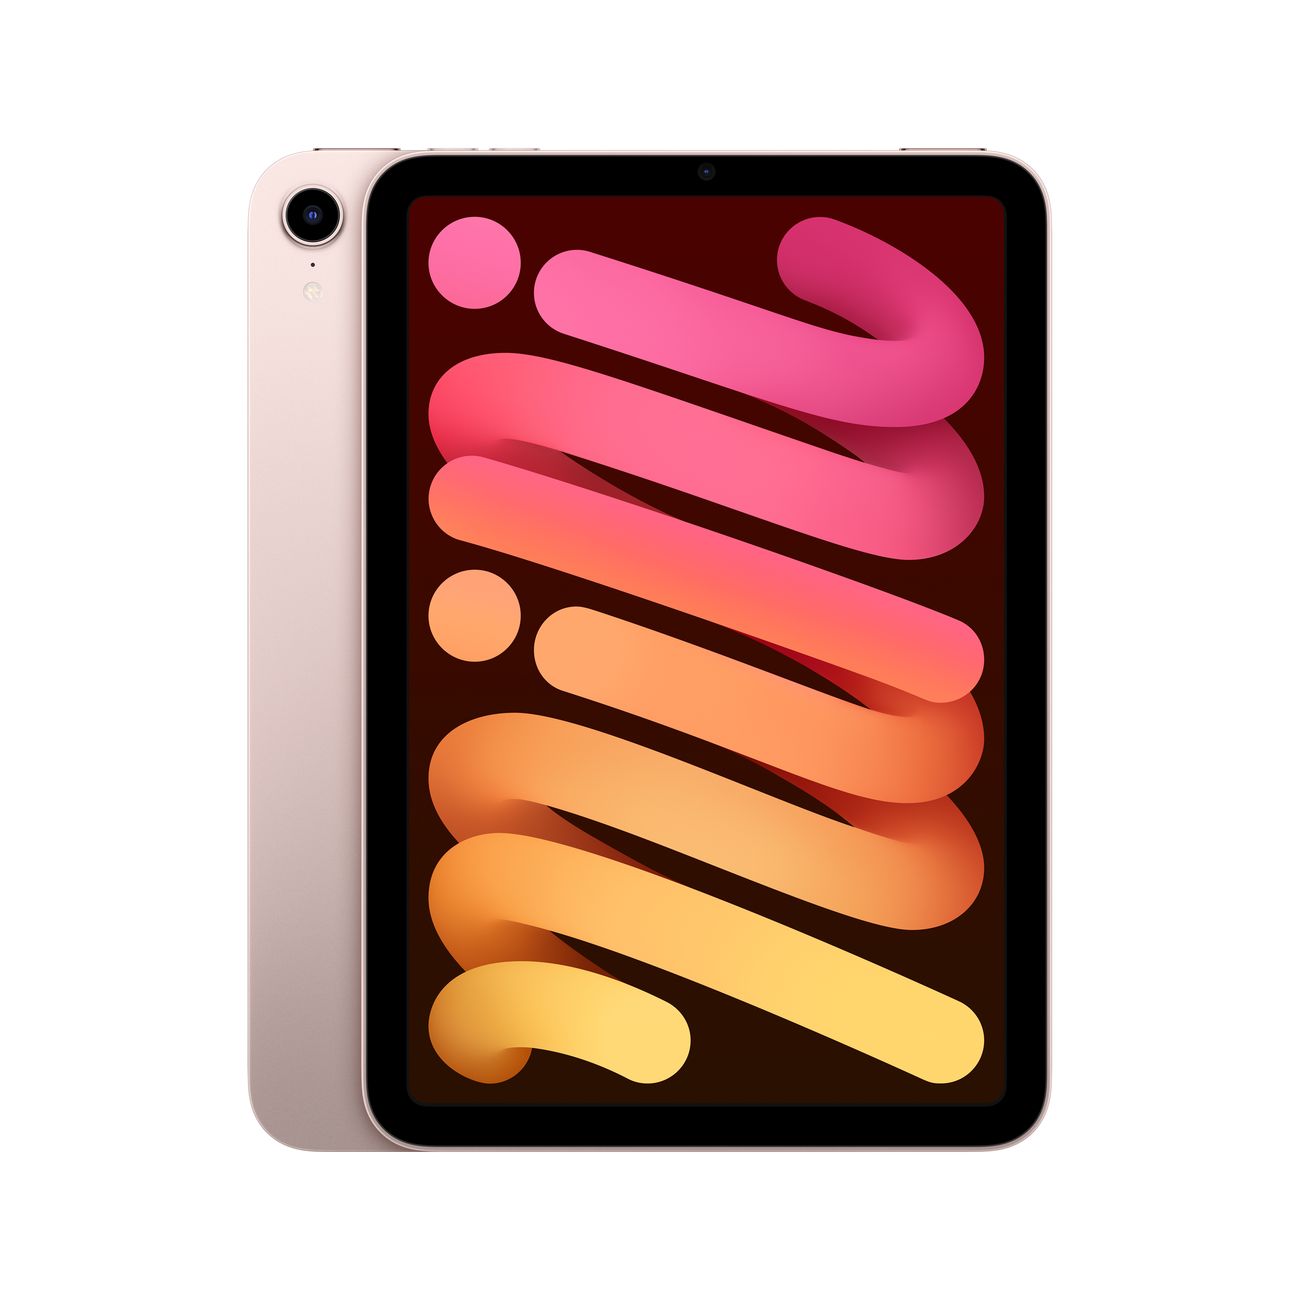 Купить планшет apple ipad mini wi-fi+cell 64gb pink (mlx43) Apple iPad mini в официальном магазине Apple, Samsung, Xiaomi. iPixel.ru Купить, заказ, кредит, рассрочка, отзывы,  характеристики, цена,  фотографии, в подарок.